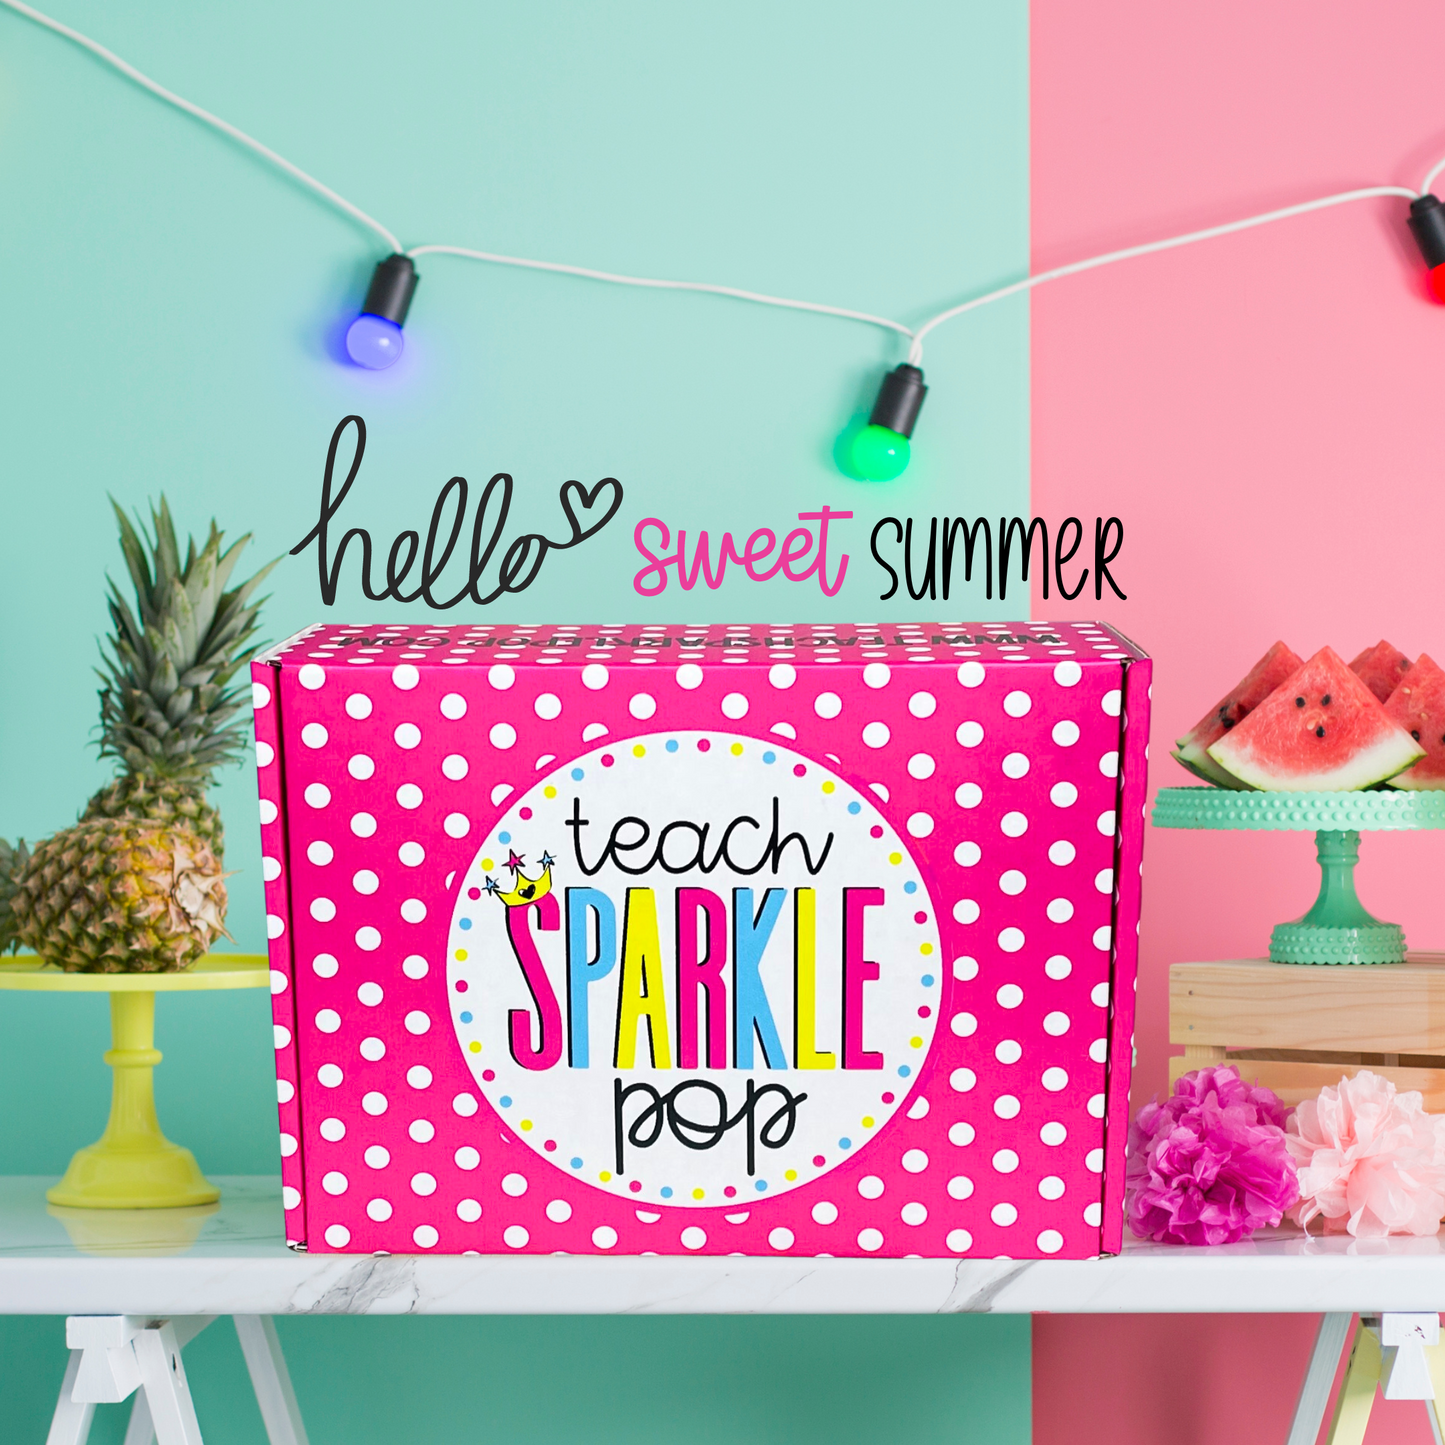 Teach Sparkle Pop Box